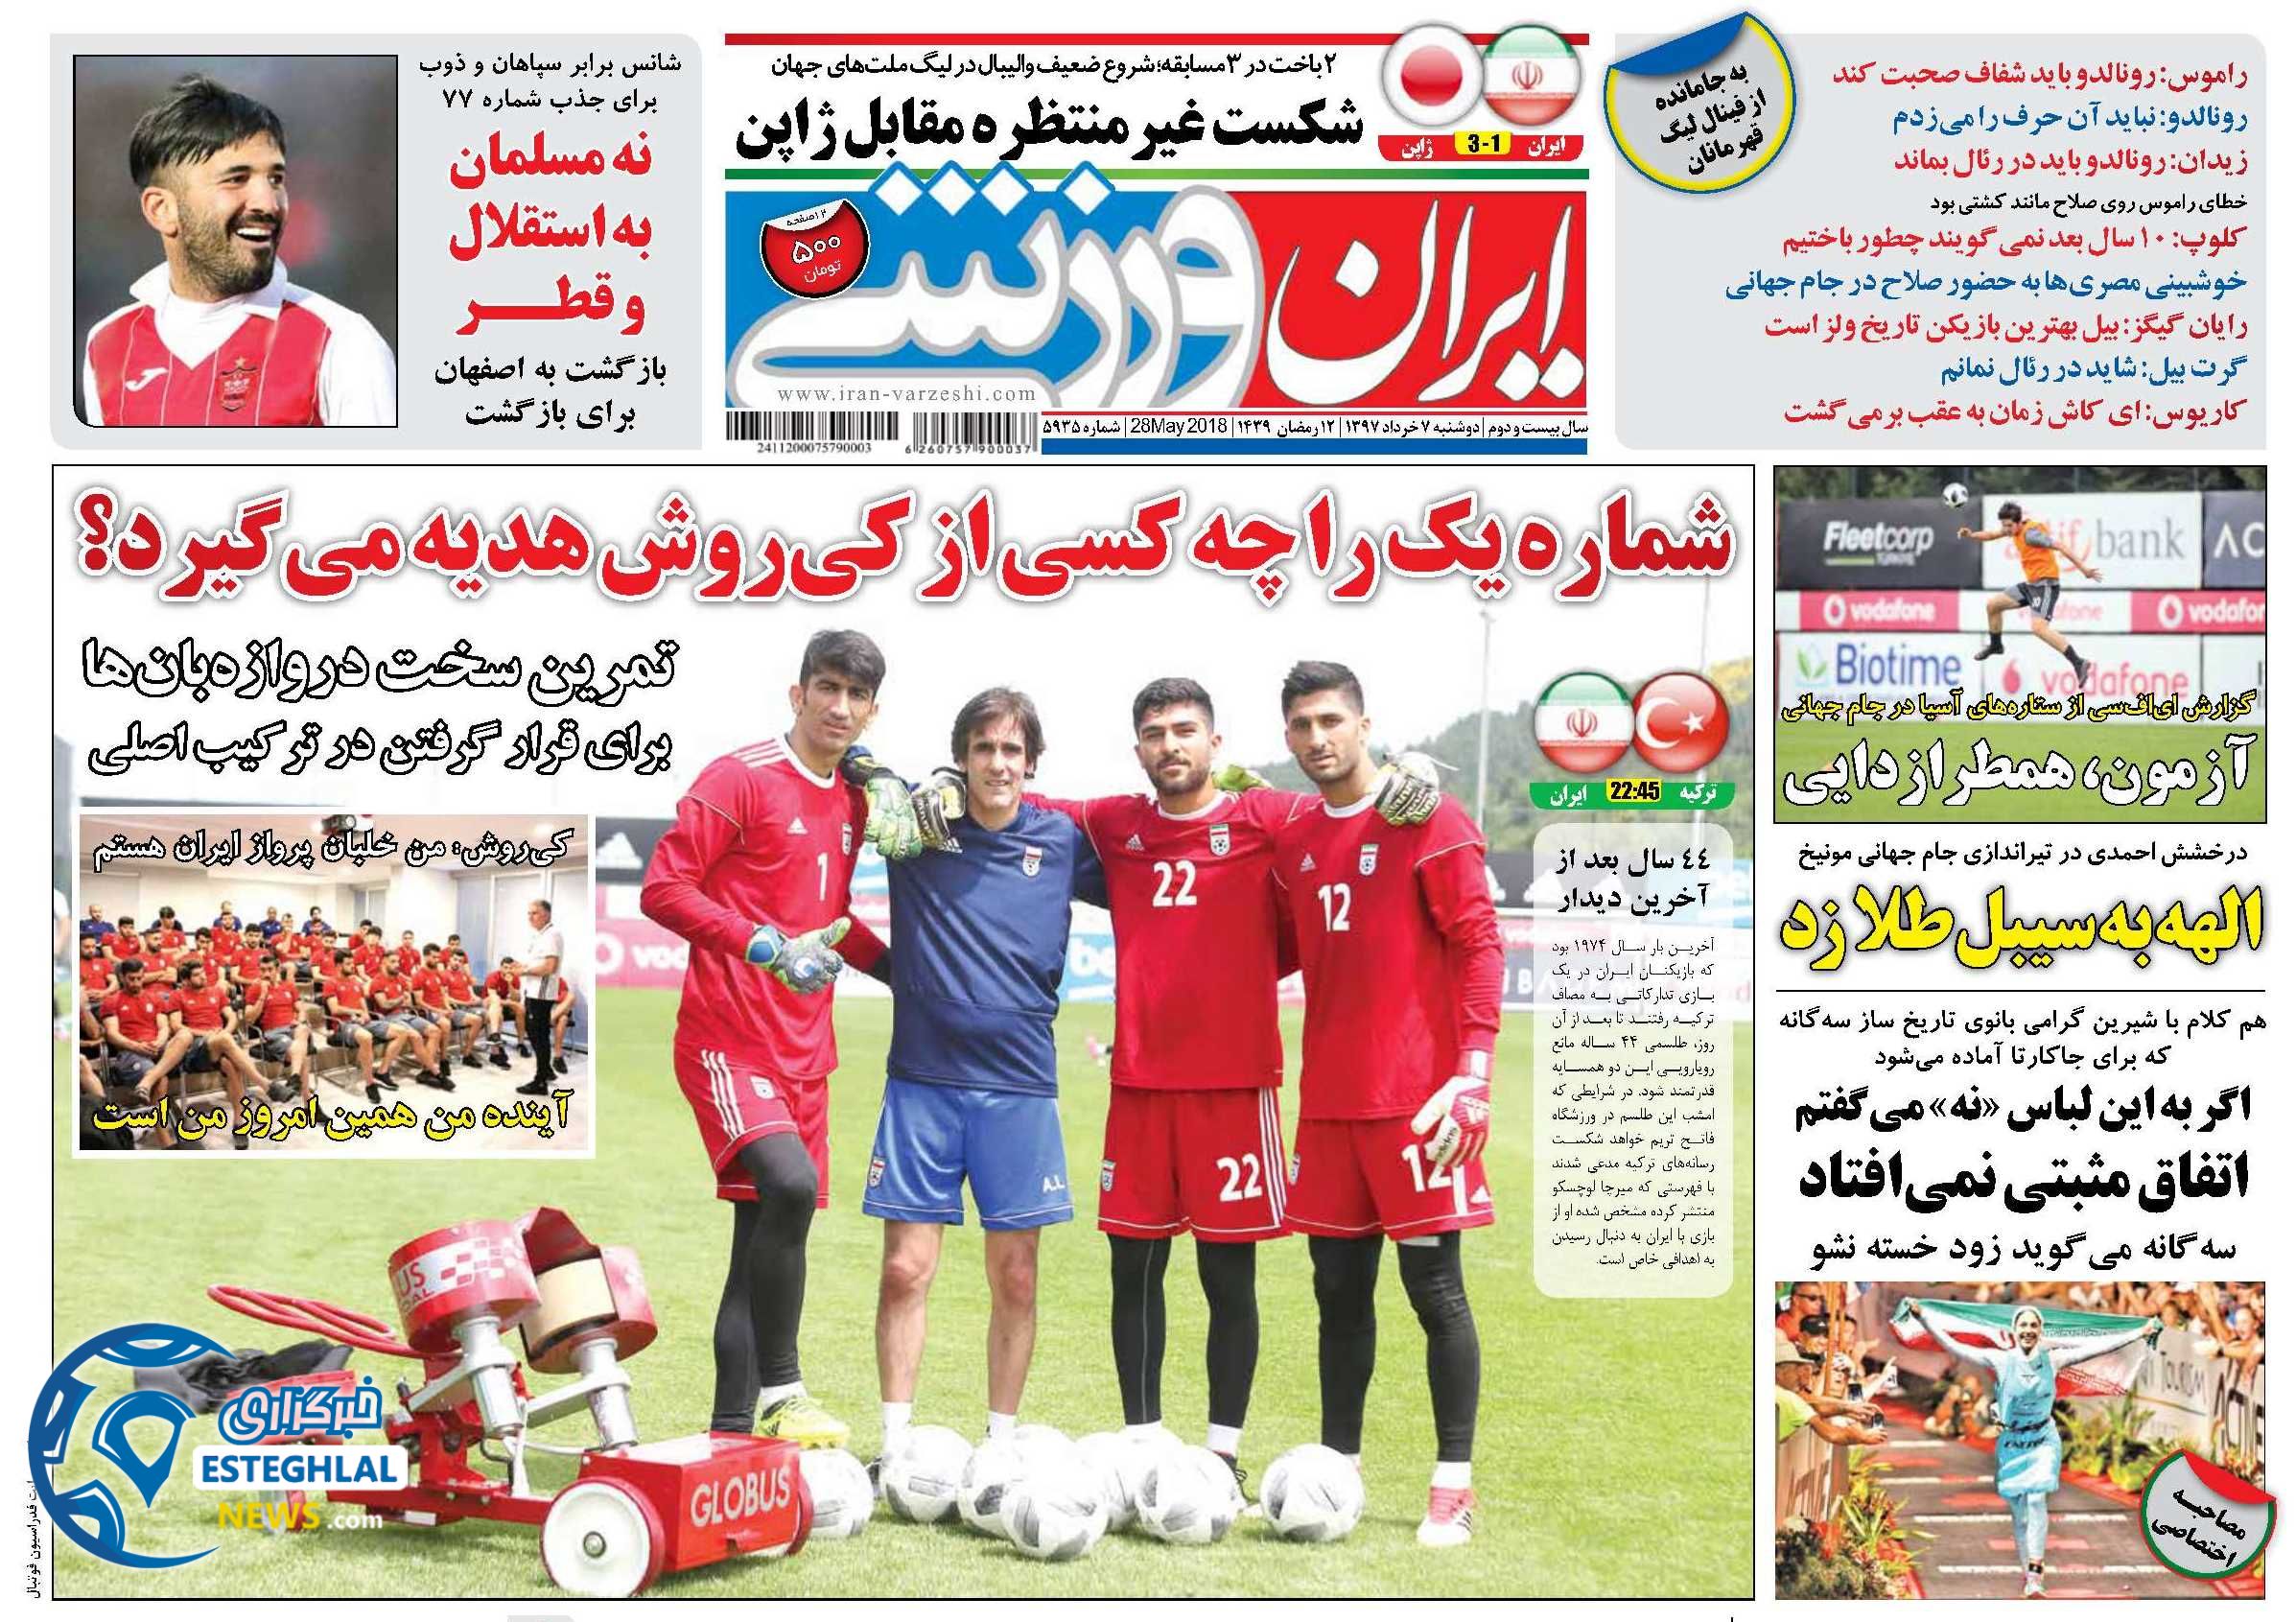   روزنامه ایران ورزشی دوشنبه 7 خرداد 1397   